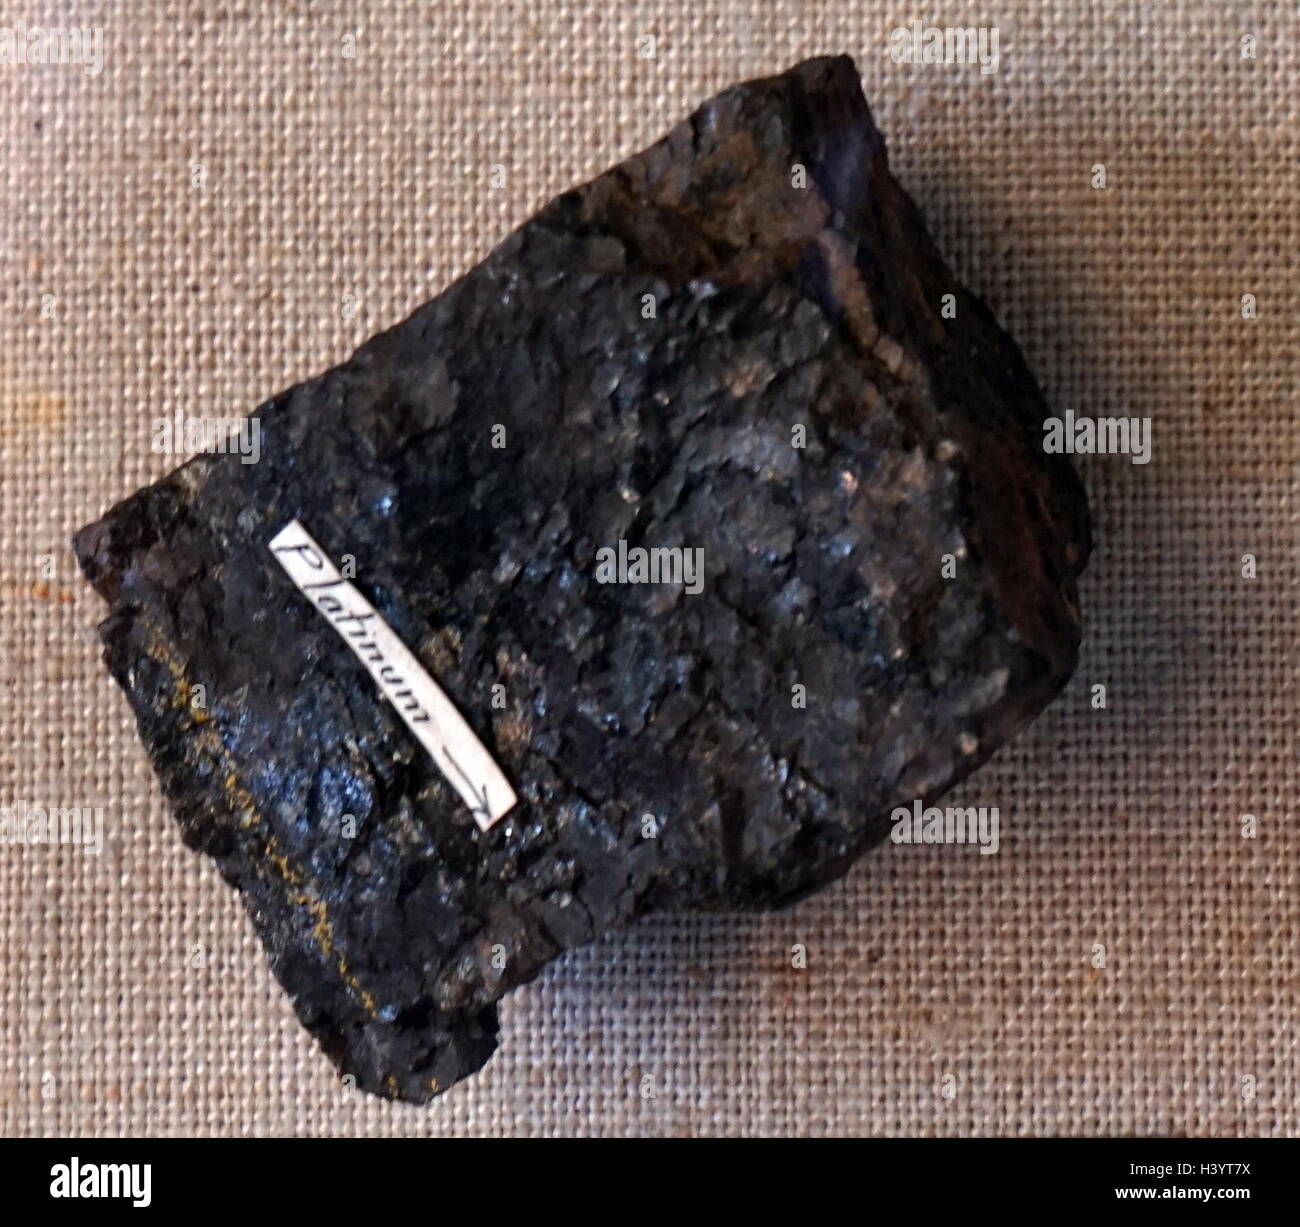 Un échantillon de dunite, un vert à brun roche ignée à grain grossier et composée en grande partie de l'olivine. En date du 21e siècle Banque D'Images